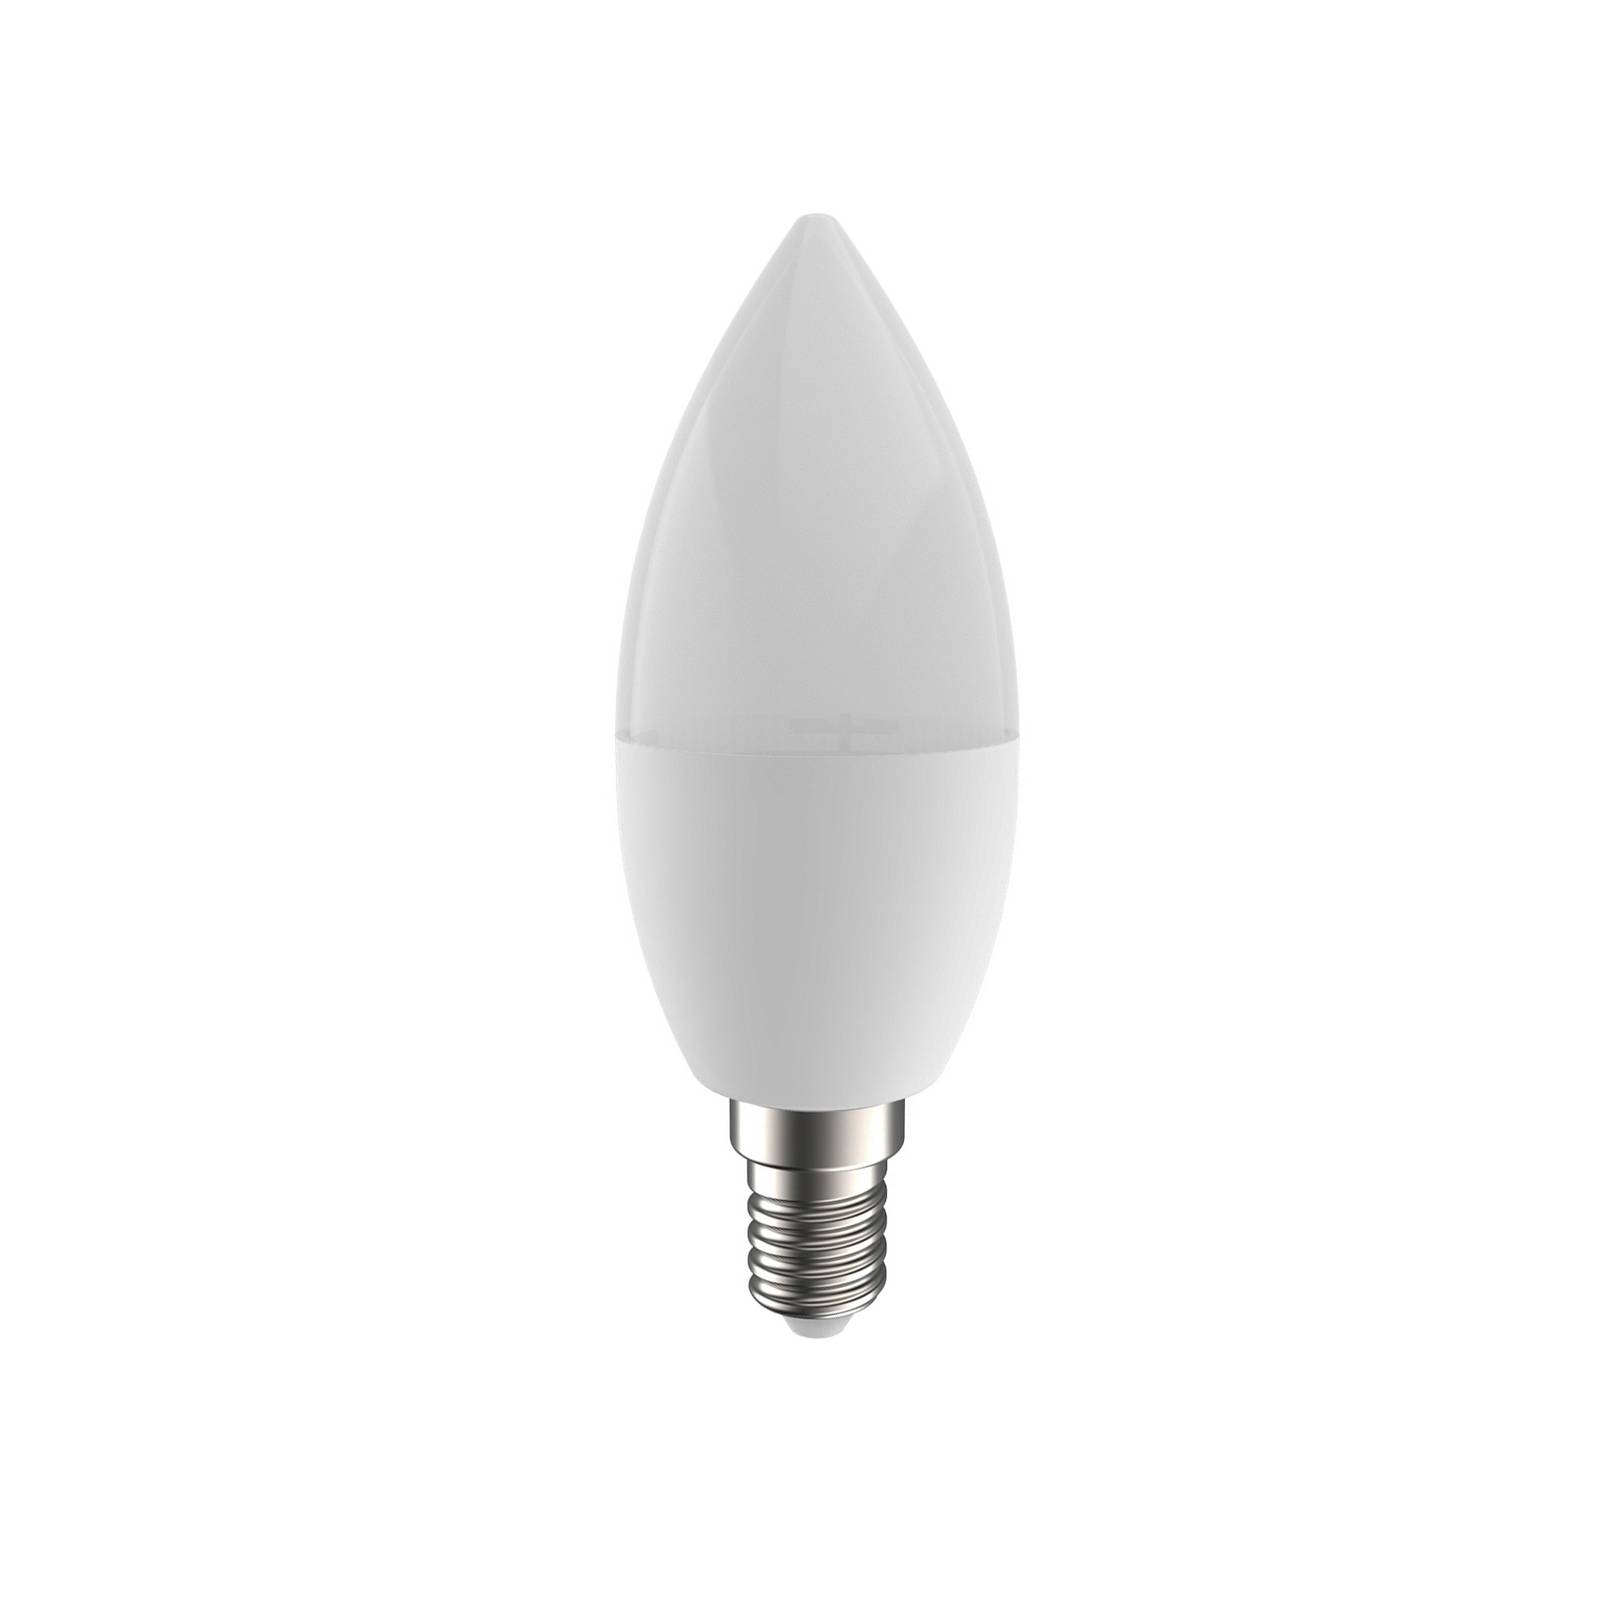 Image of PRIOS Smart LED E14 4,5 W tunable white WLAN RVB Tuya 4251911747492